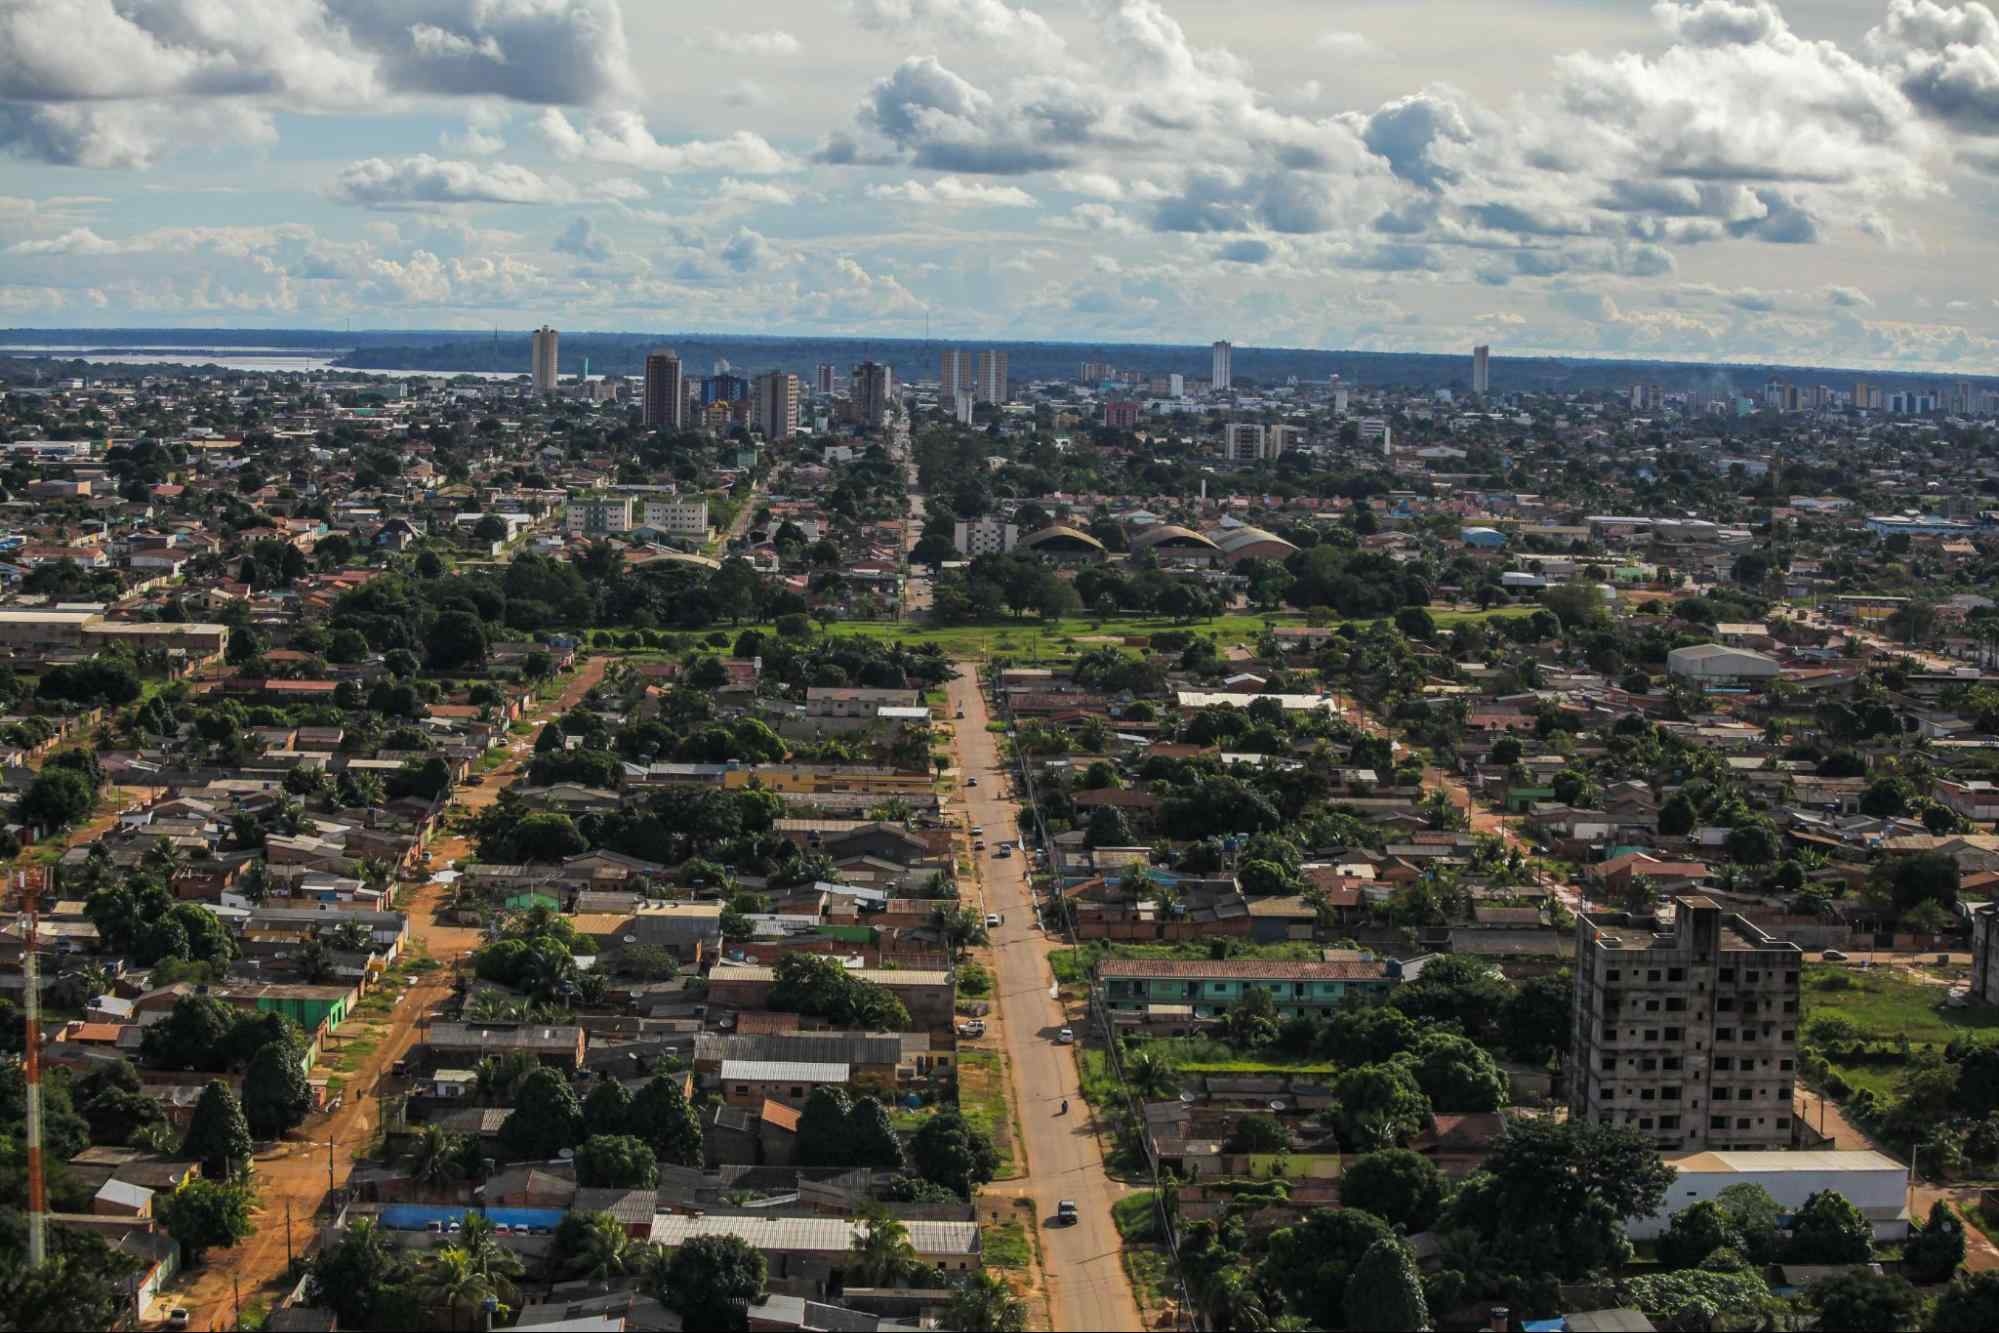 Vista aérea da cidade de Porto Velho, Rondônia. A paisagem urbana é bastante arborizada e composta principalmente por construções baixas. Em segundo plano, aparecem alguns prédios maiores e uma parte do rio